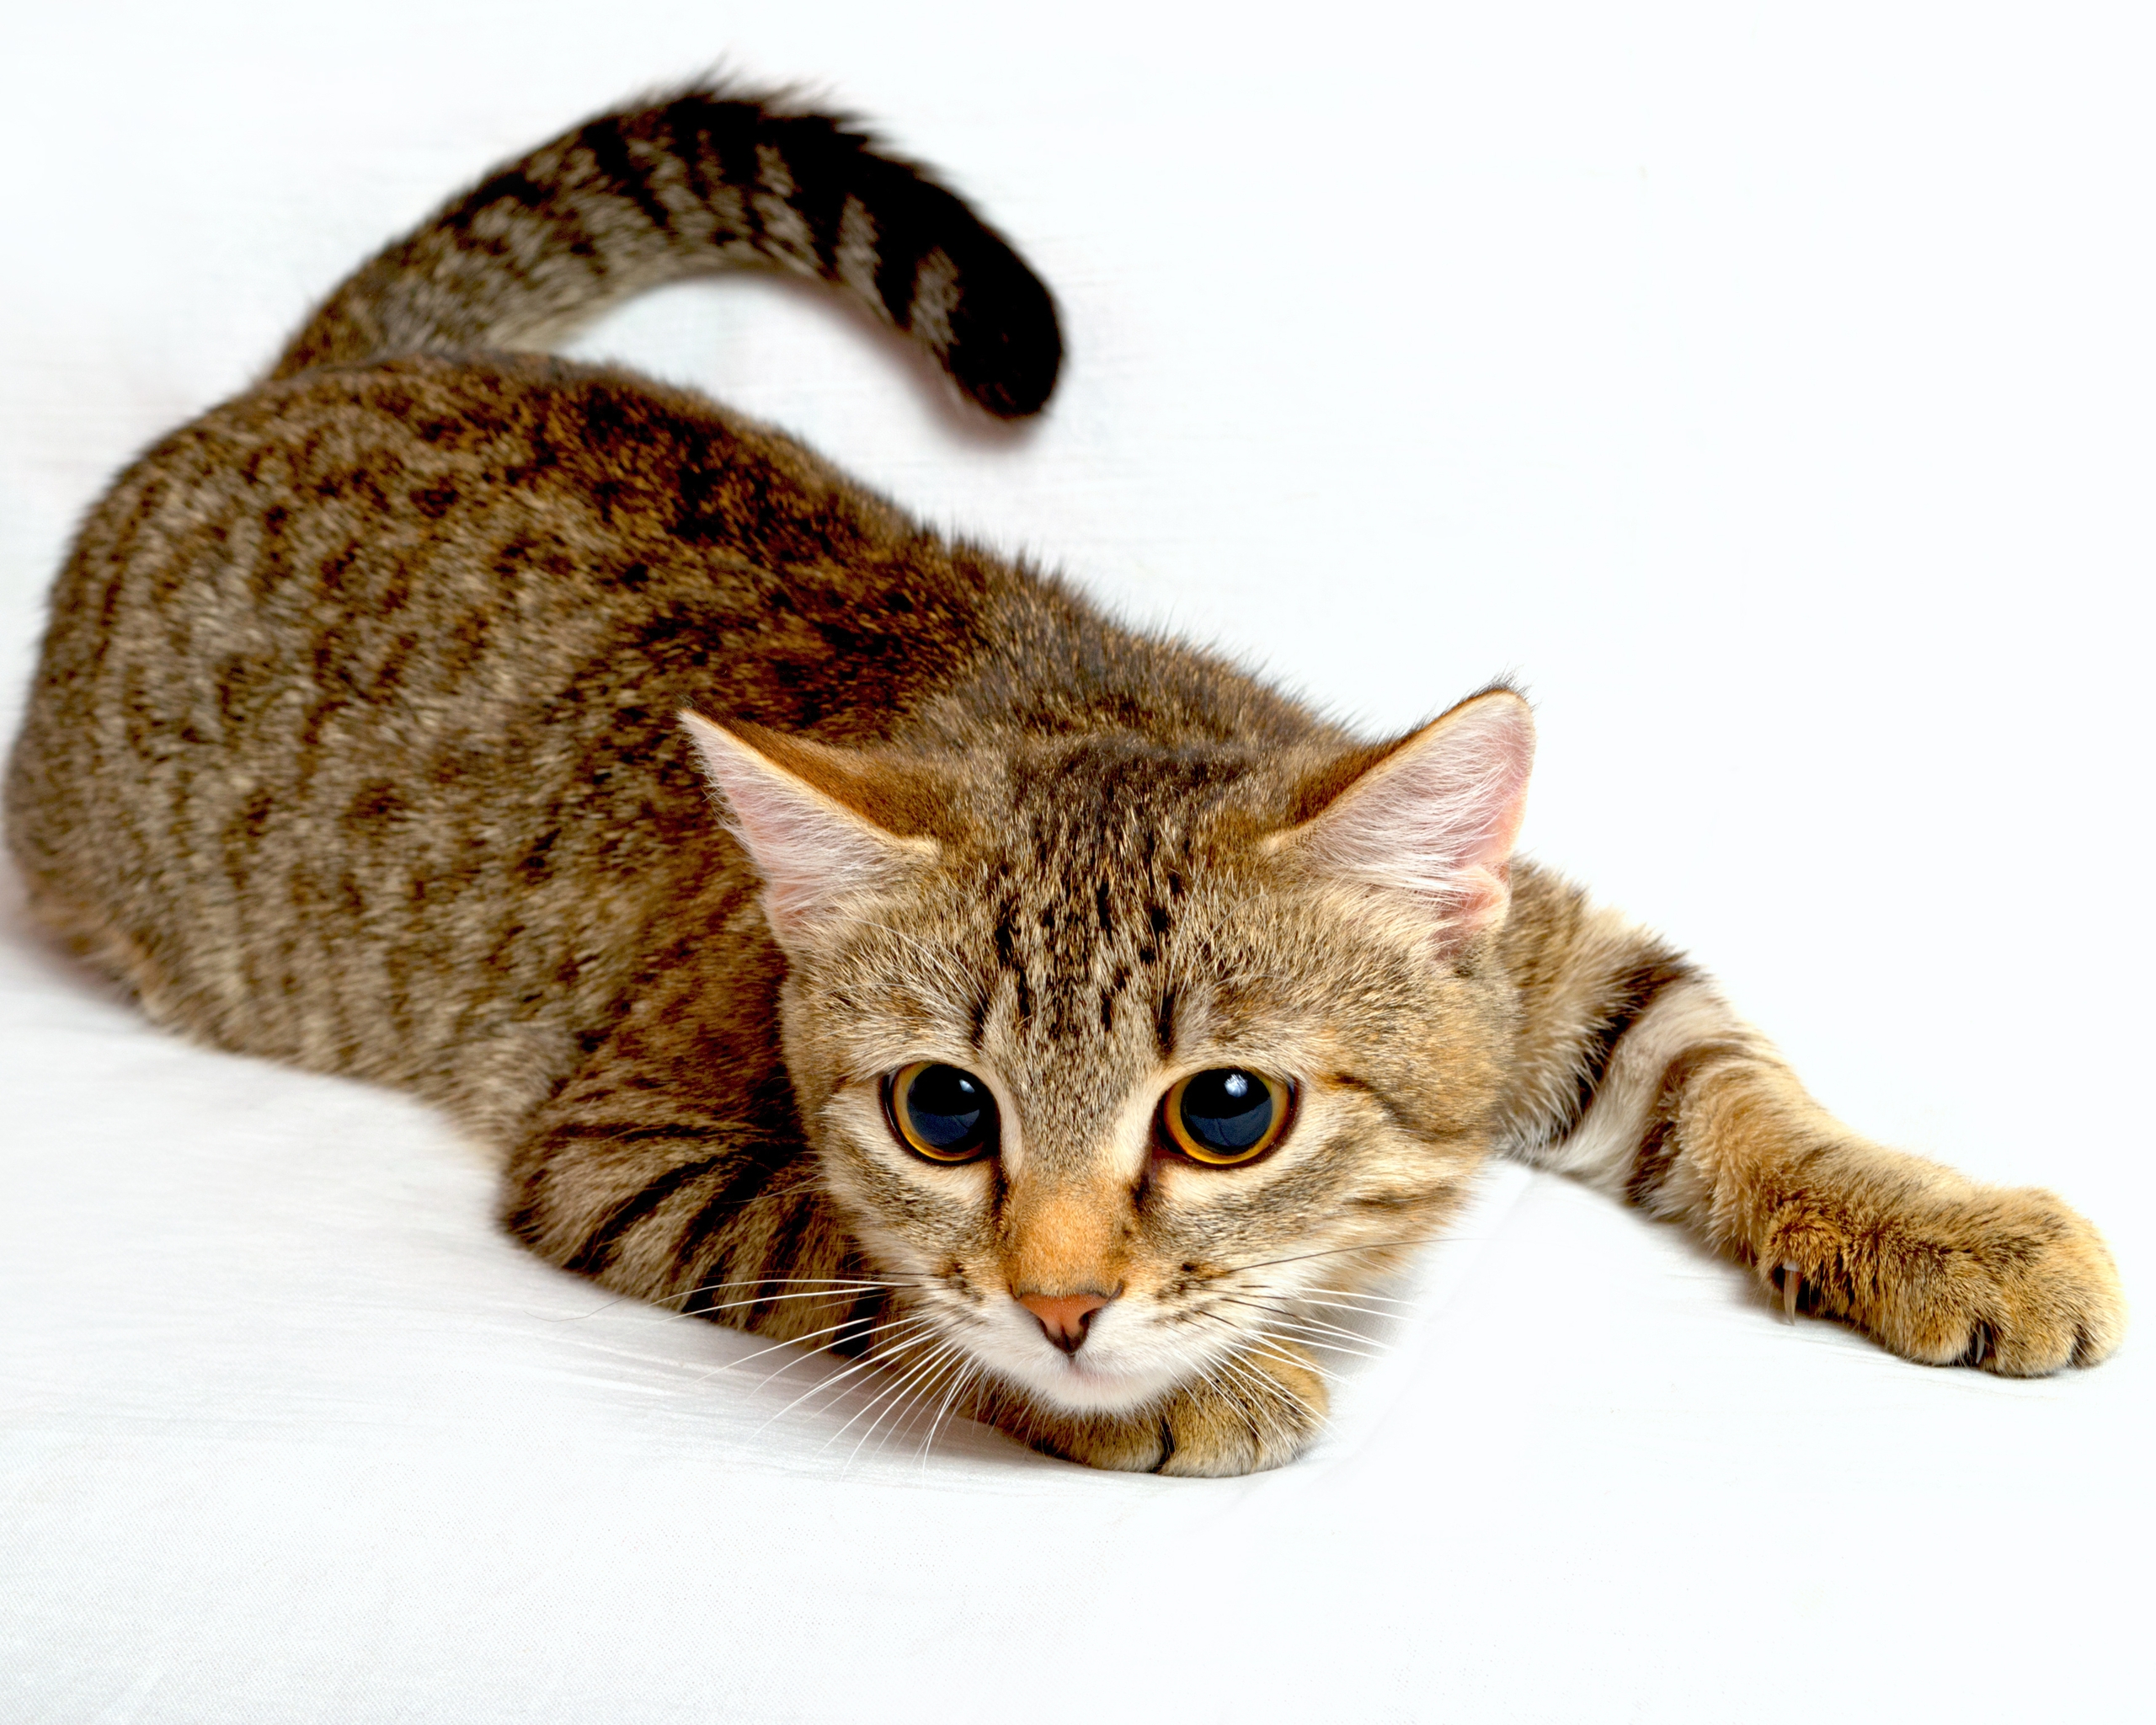 Image: Cat, muzzle, eyes, striped, white background